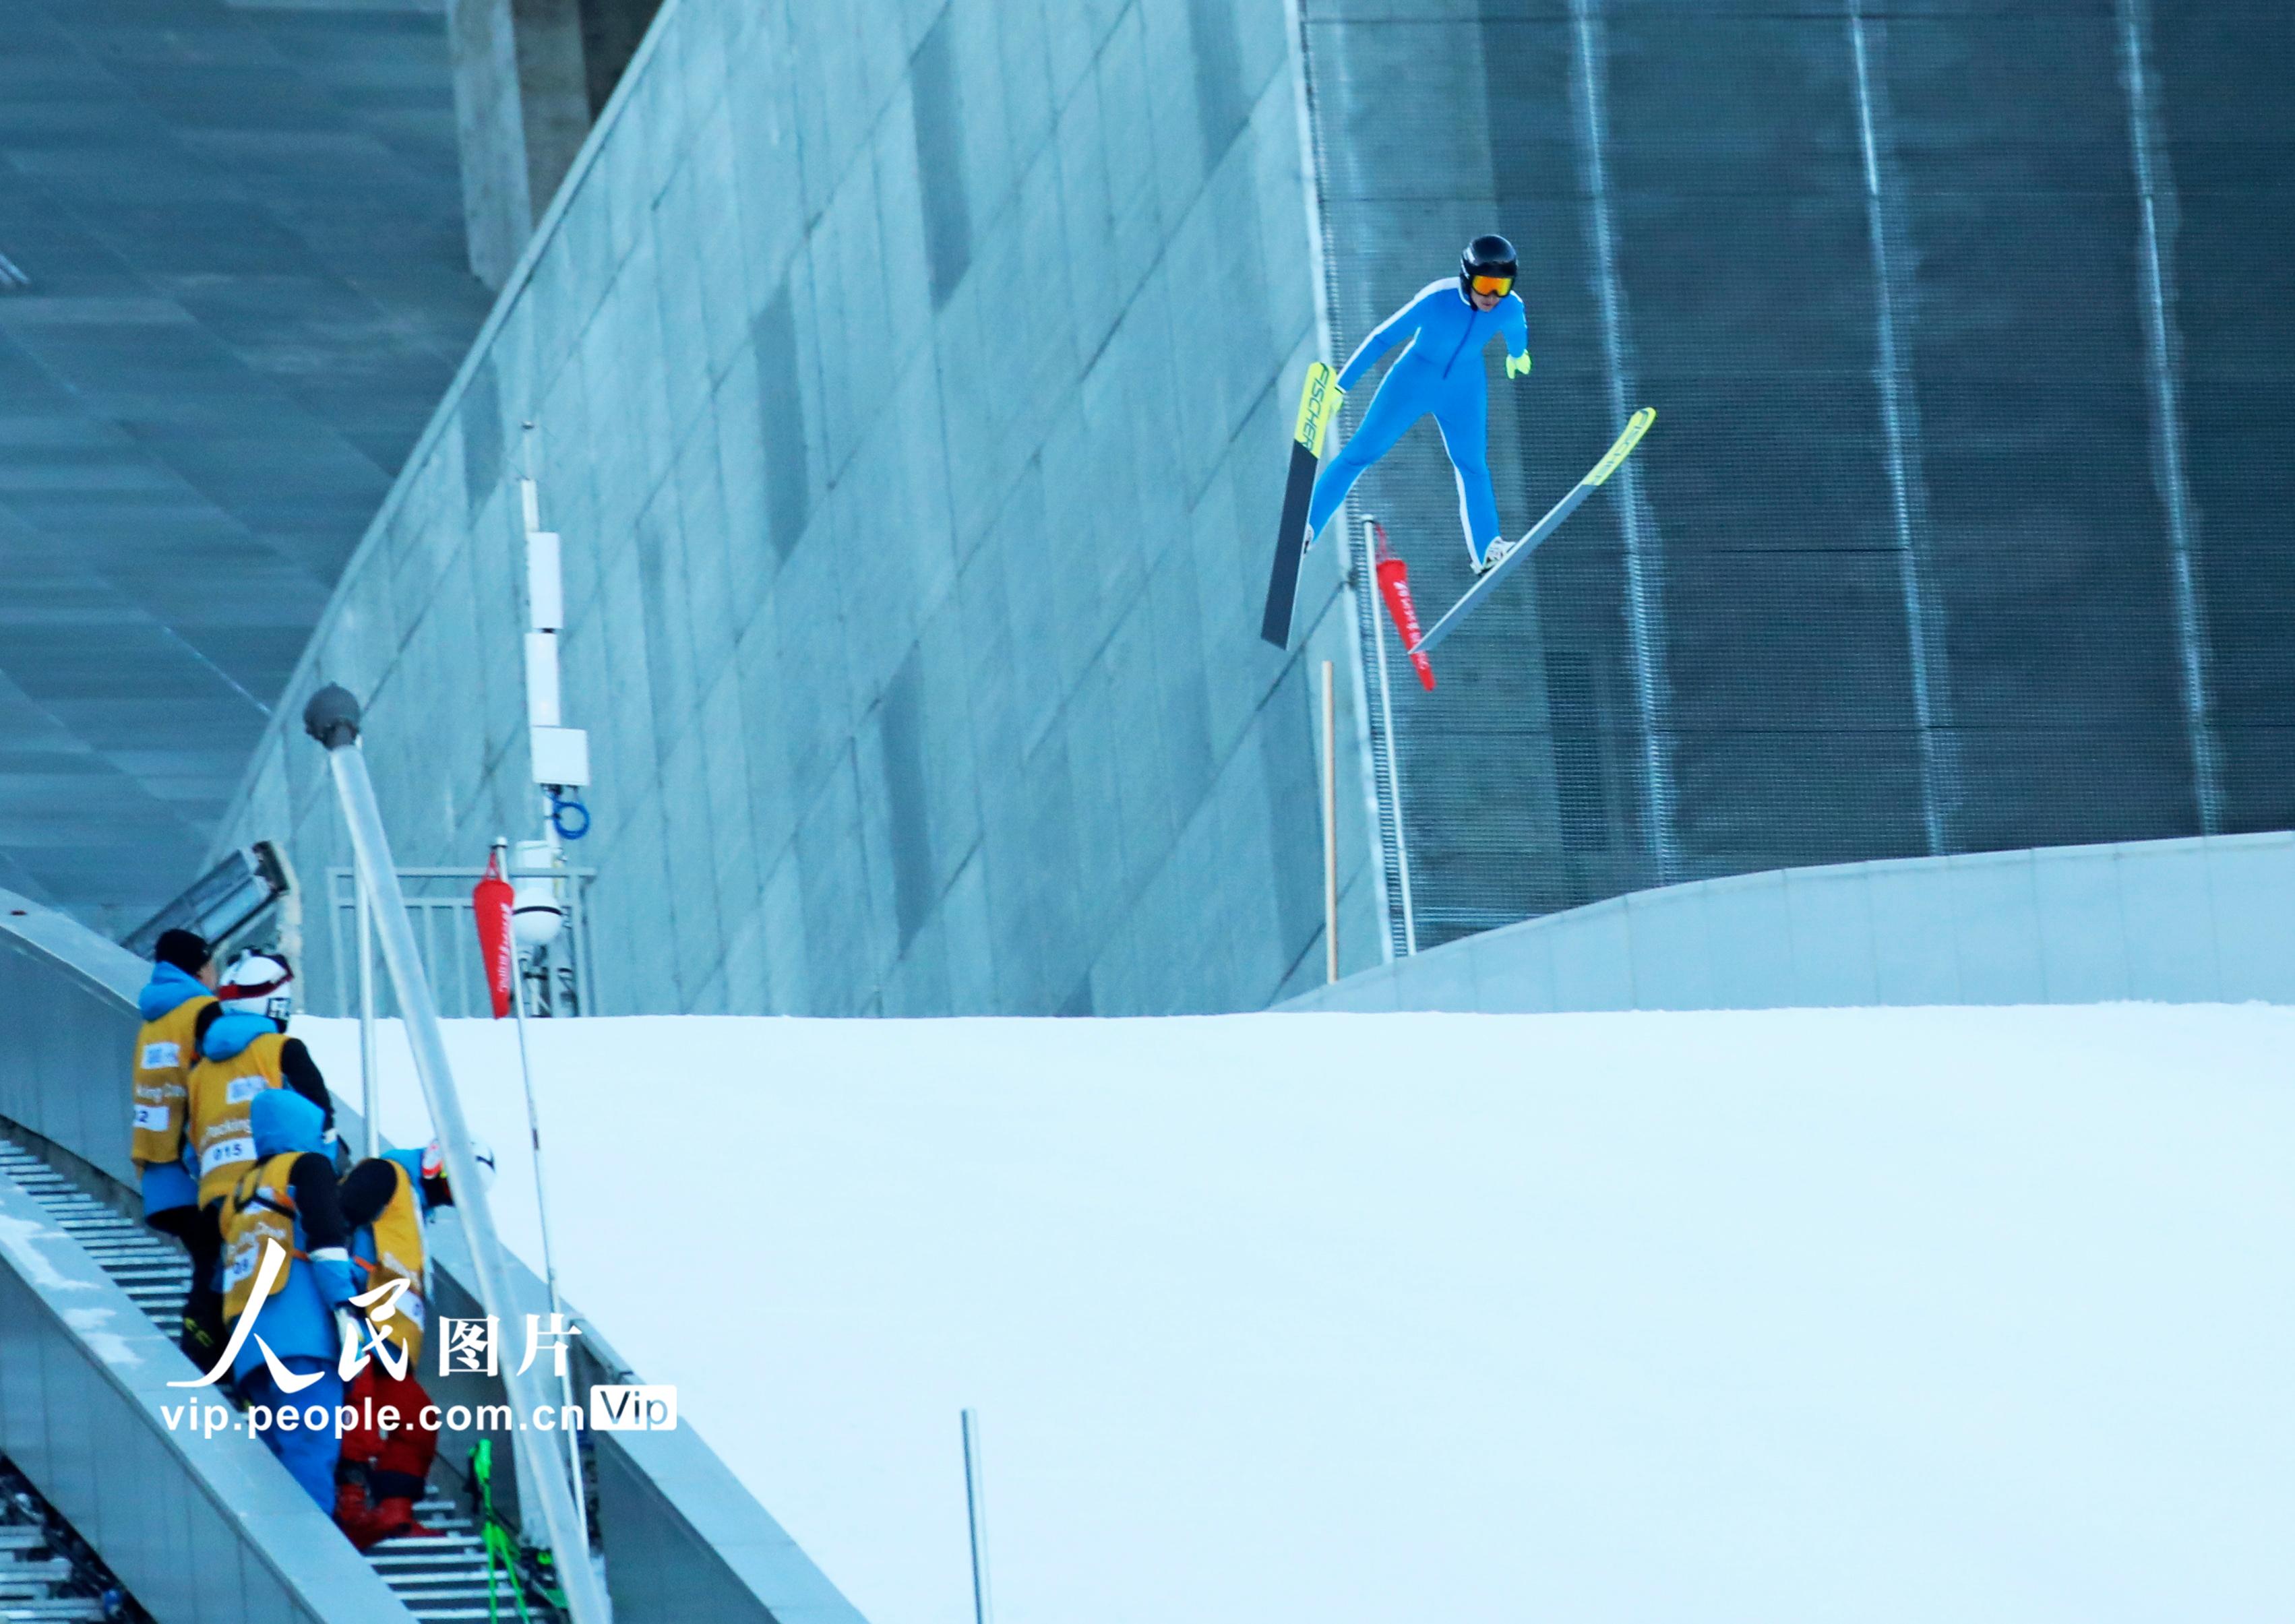 北京2022年冬奧會張家口賽區國家跳台滑雪中心迎來首日試滑【3】